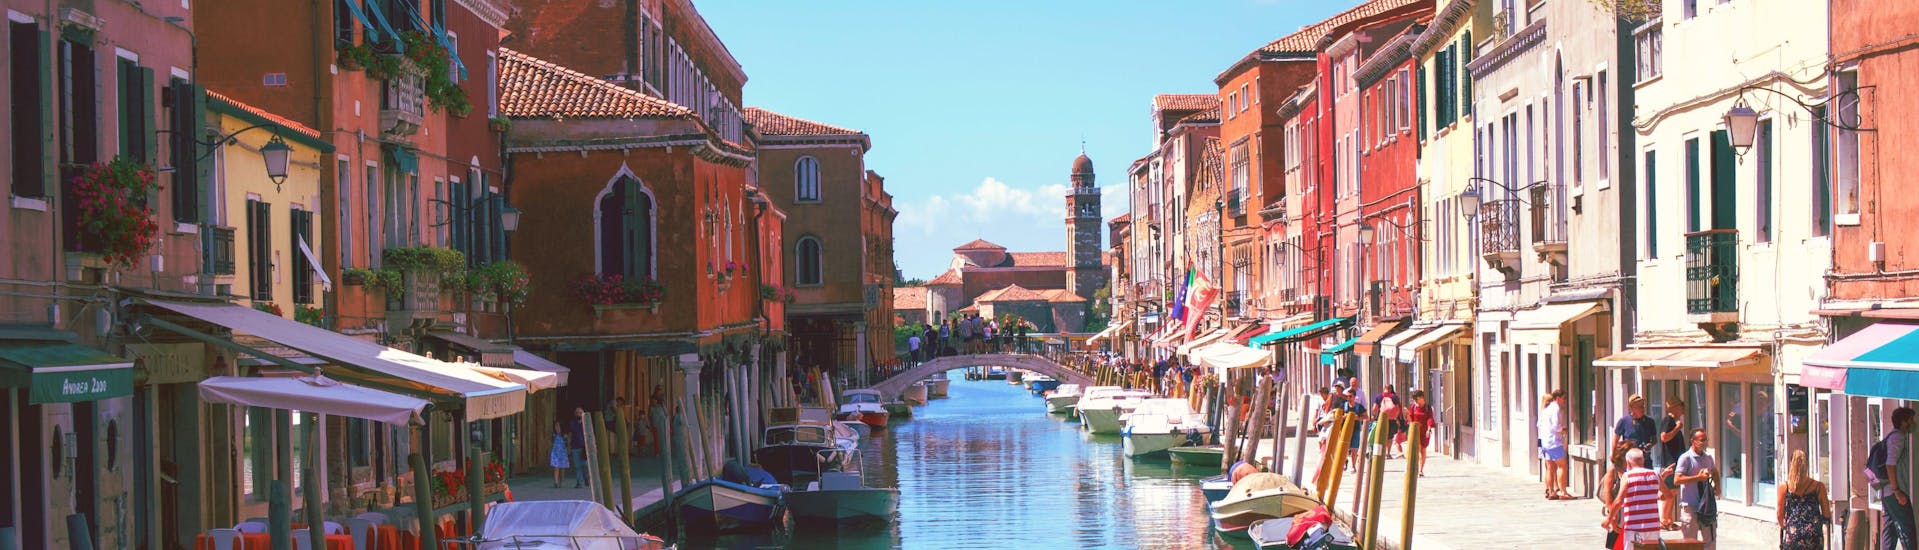 Vista de Burano, una pequeña isla cerca de Venecia a la que se puede llegar con un paseo en barco.